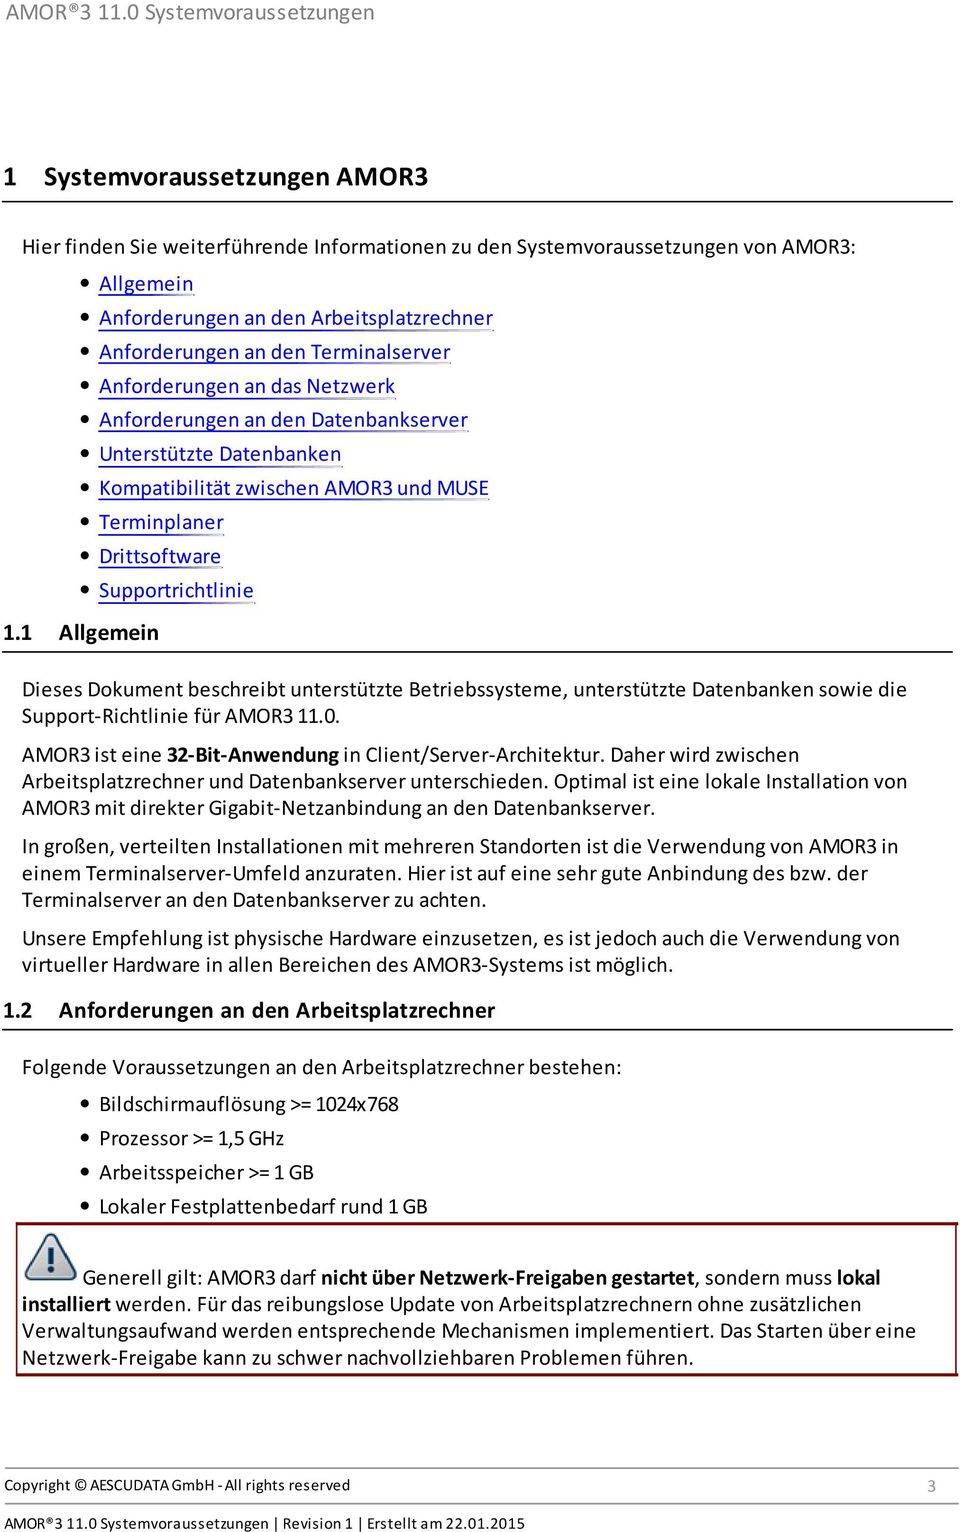 1 Allgemein Dieses Dokument beschreibt unterstützte Betriebssysteme, unterstützte Datenbanken sowie die Support-Richtlinie für AMOR3 11.0. AMOR3 ist eine 32-Bit-Anwendung in Client/Server-Architektur.